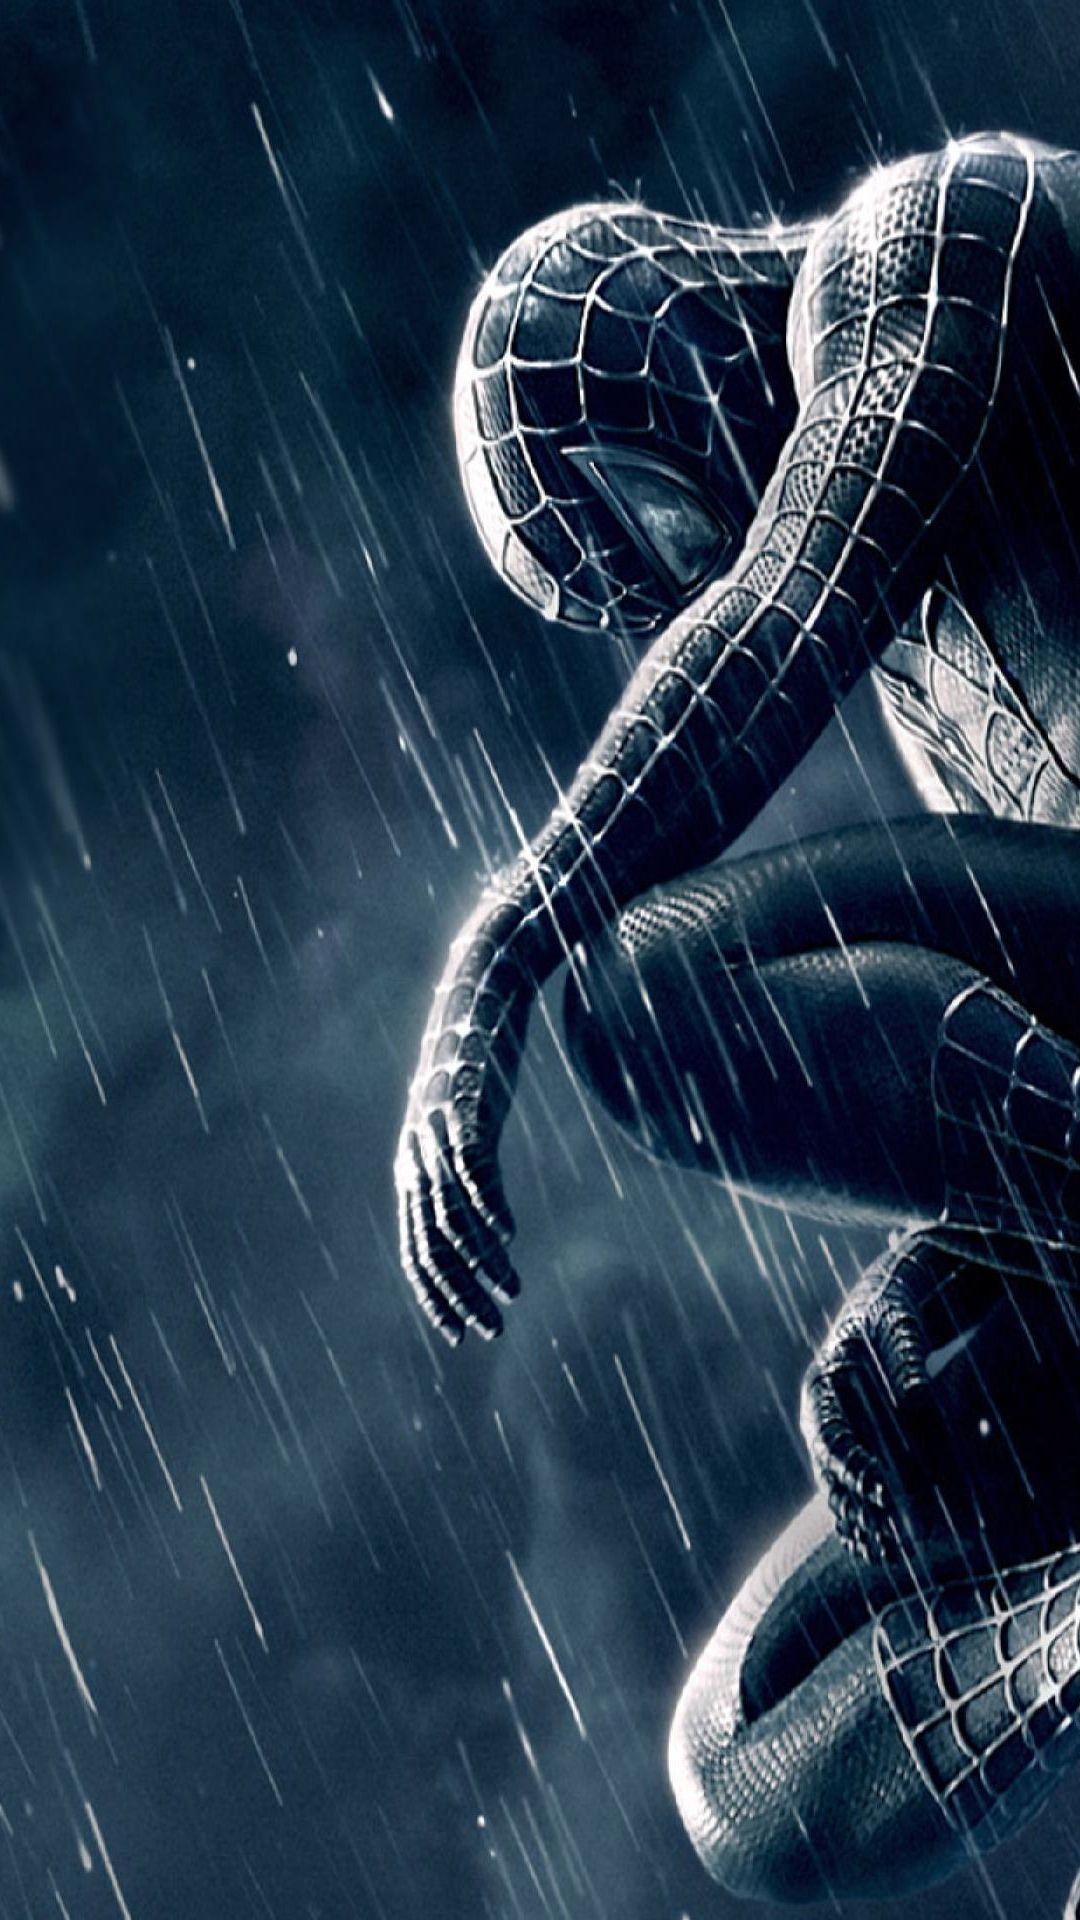 1080x1920 iPhone Spiderman 3 Black Suit